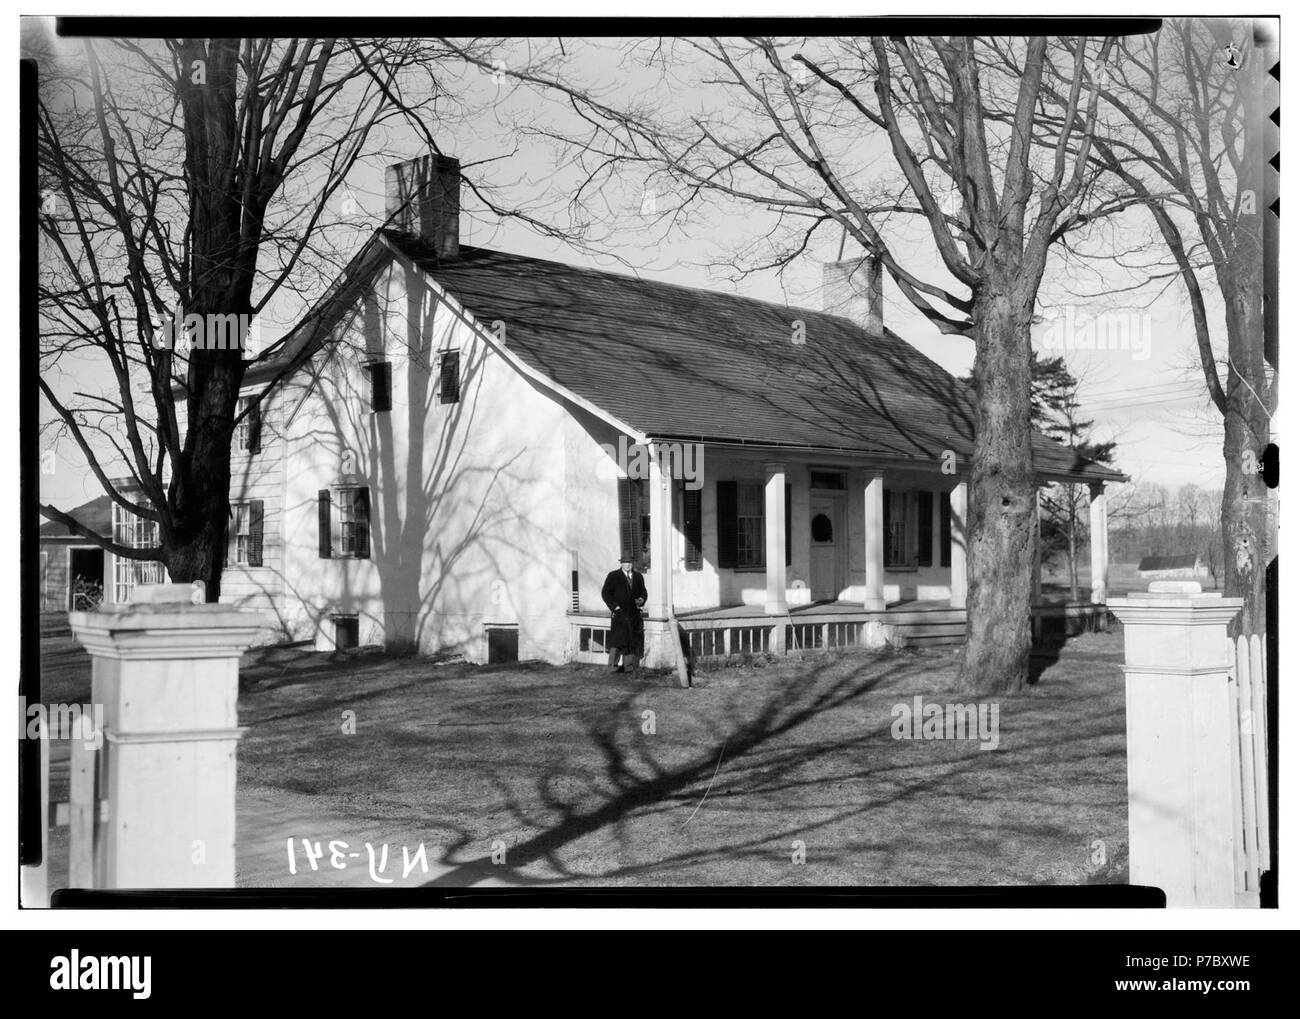 2. Historischer amerikanischer Gebäude Umfrage, Nelson E. Baldwin, Fotograf Mai 25, 1936, Detail der Süd-ost ELEVATION. - - LOC-hhh. ny 0912. Fotos. 116050 s. Stockfoto